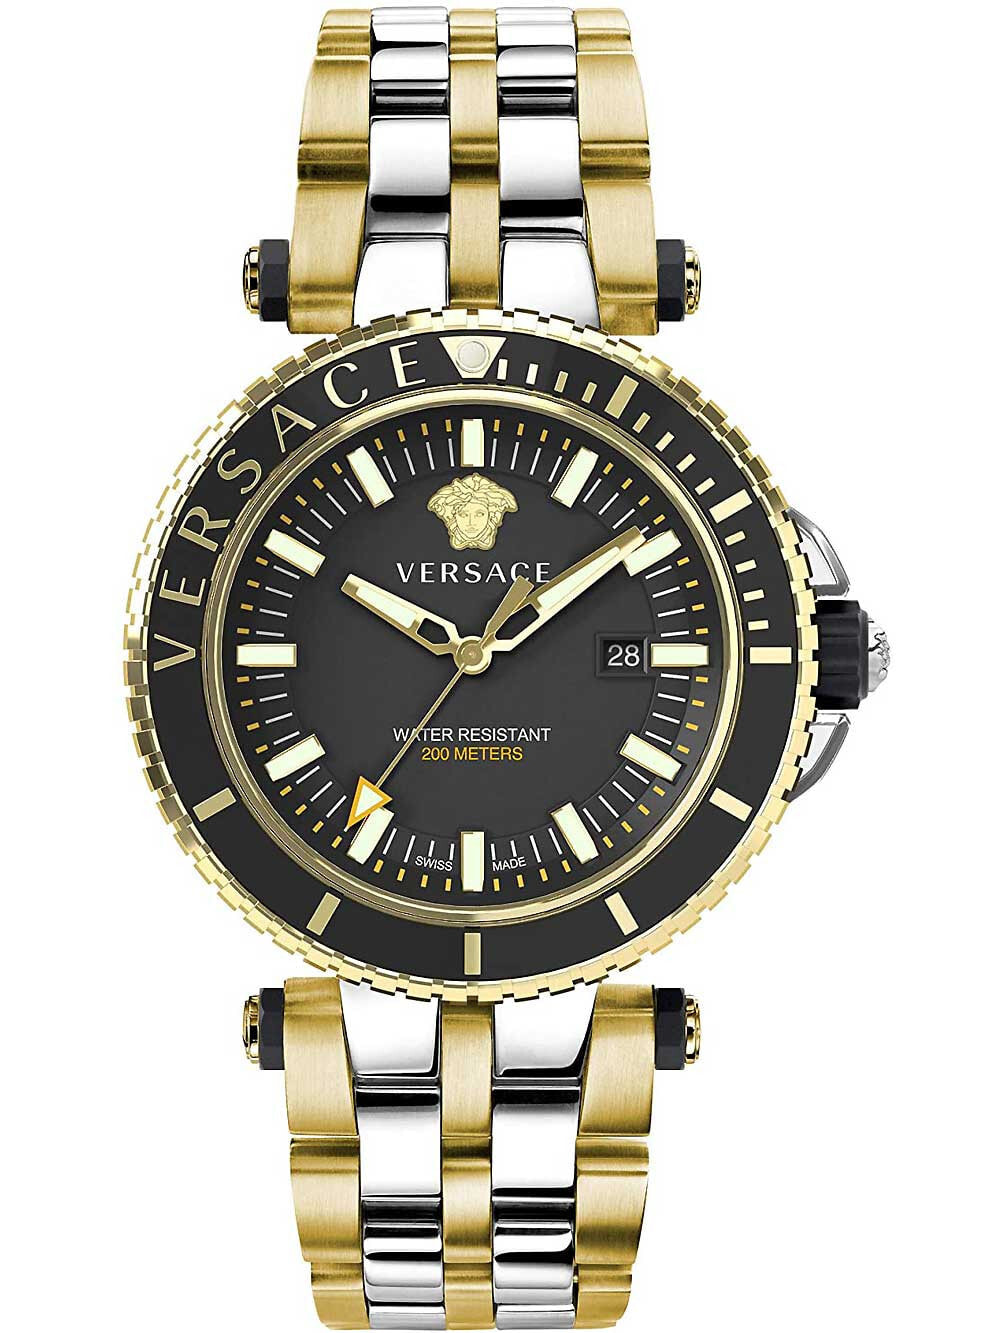 Мужские наручные часы с золотистым браслетом Versace VEAK00518 V-Race mens 46mm 5ATM